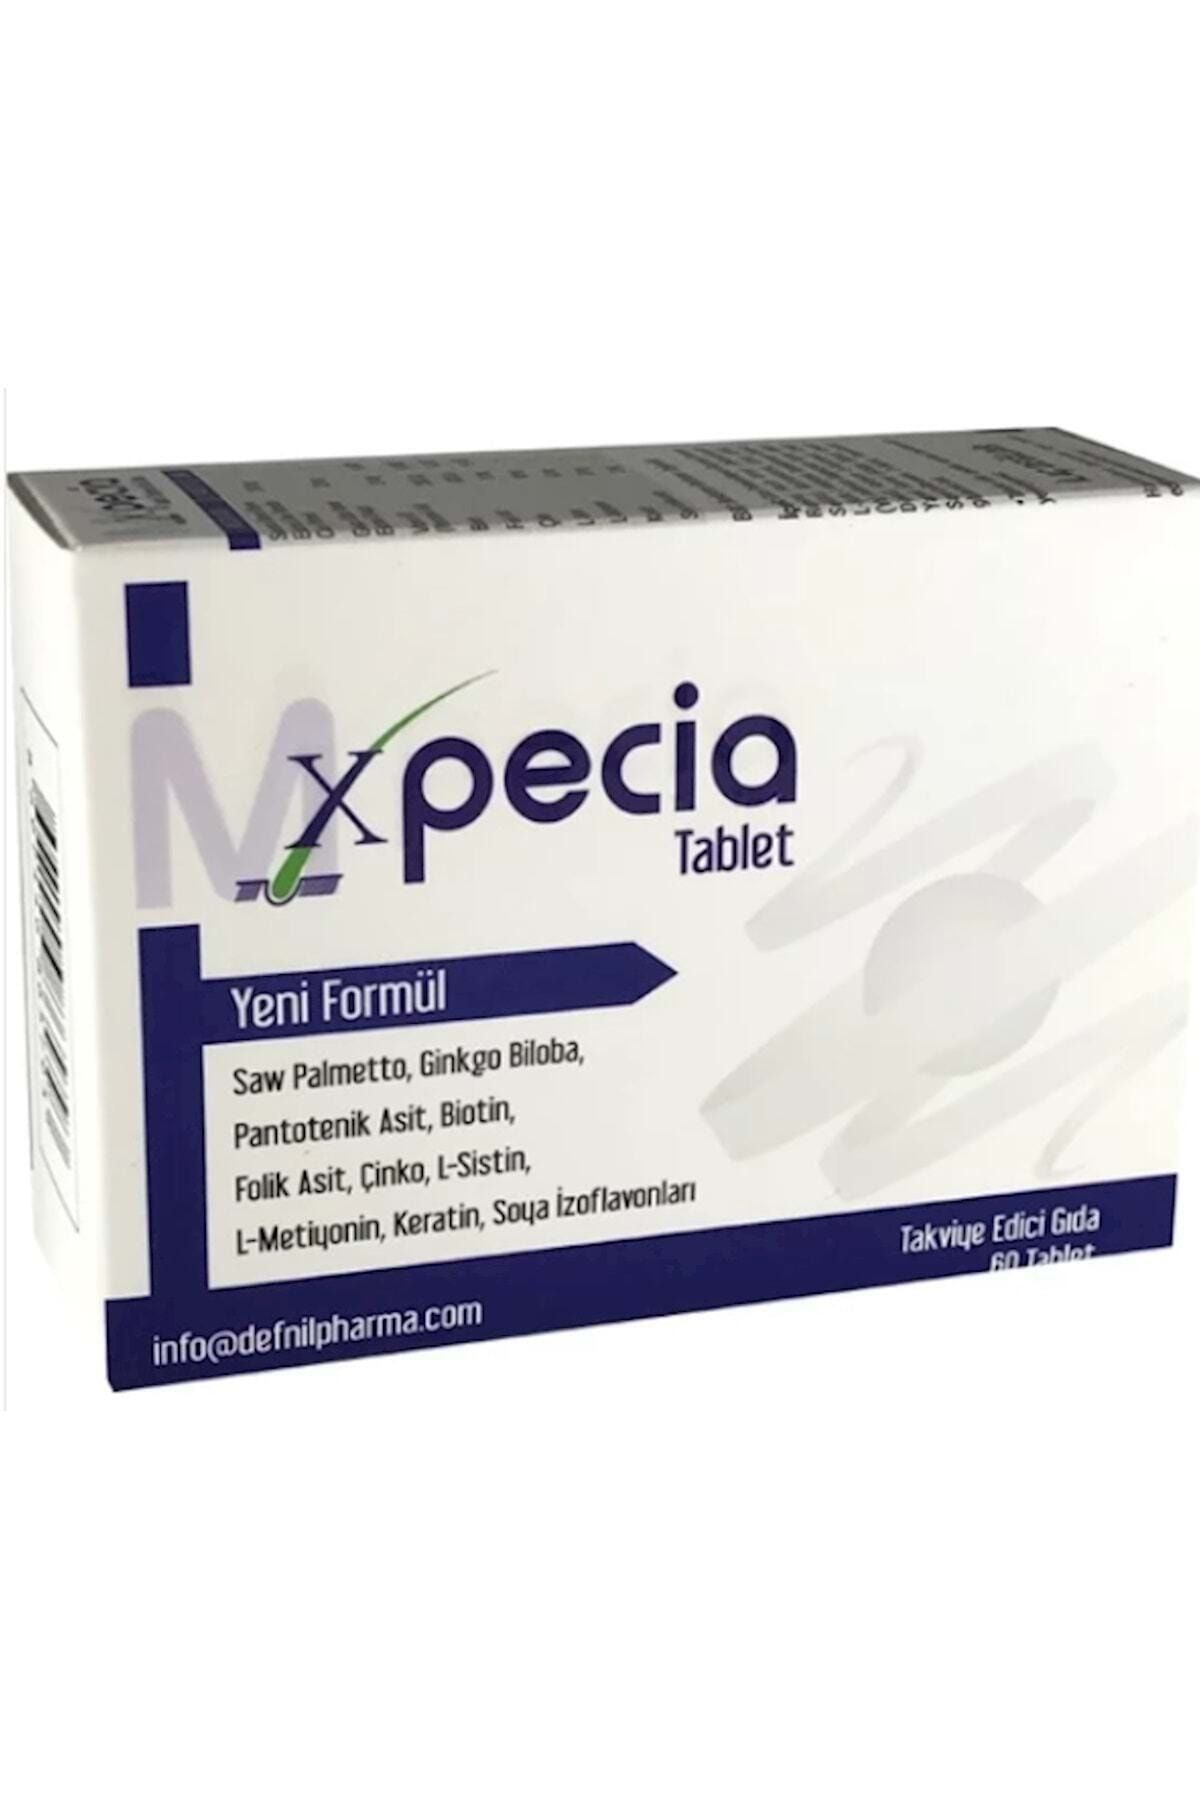 Xpecia Erkek 60 Tablet Takviye Edici Gıda